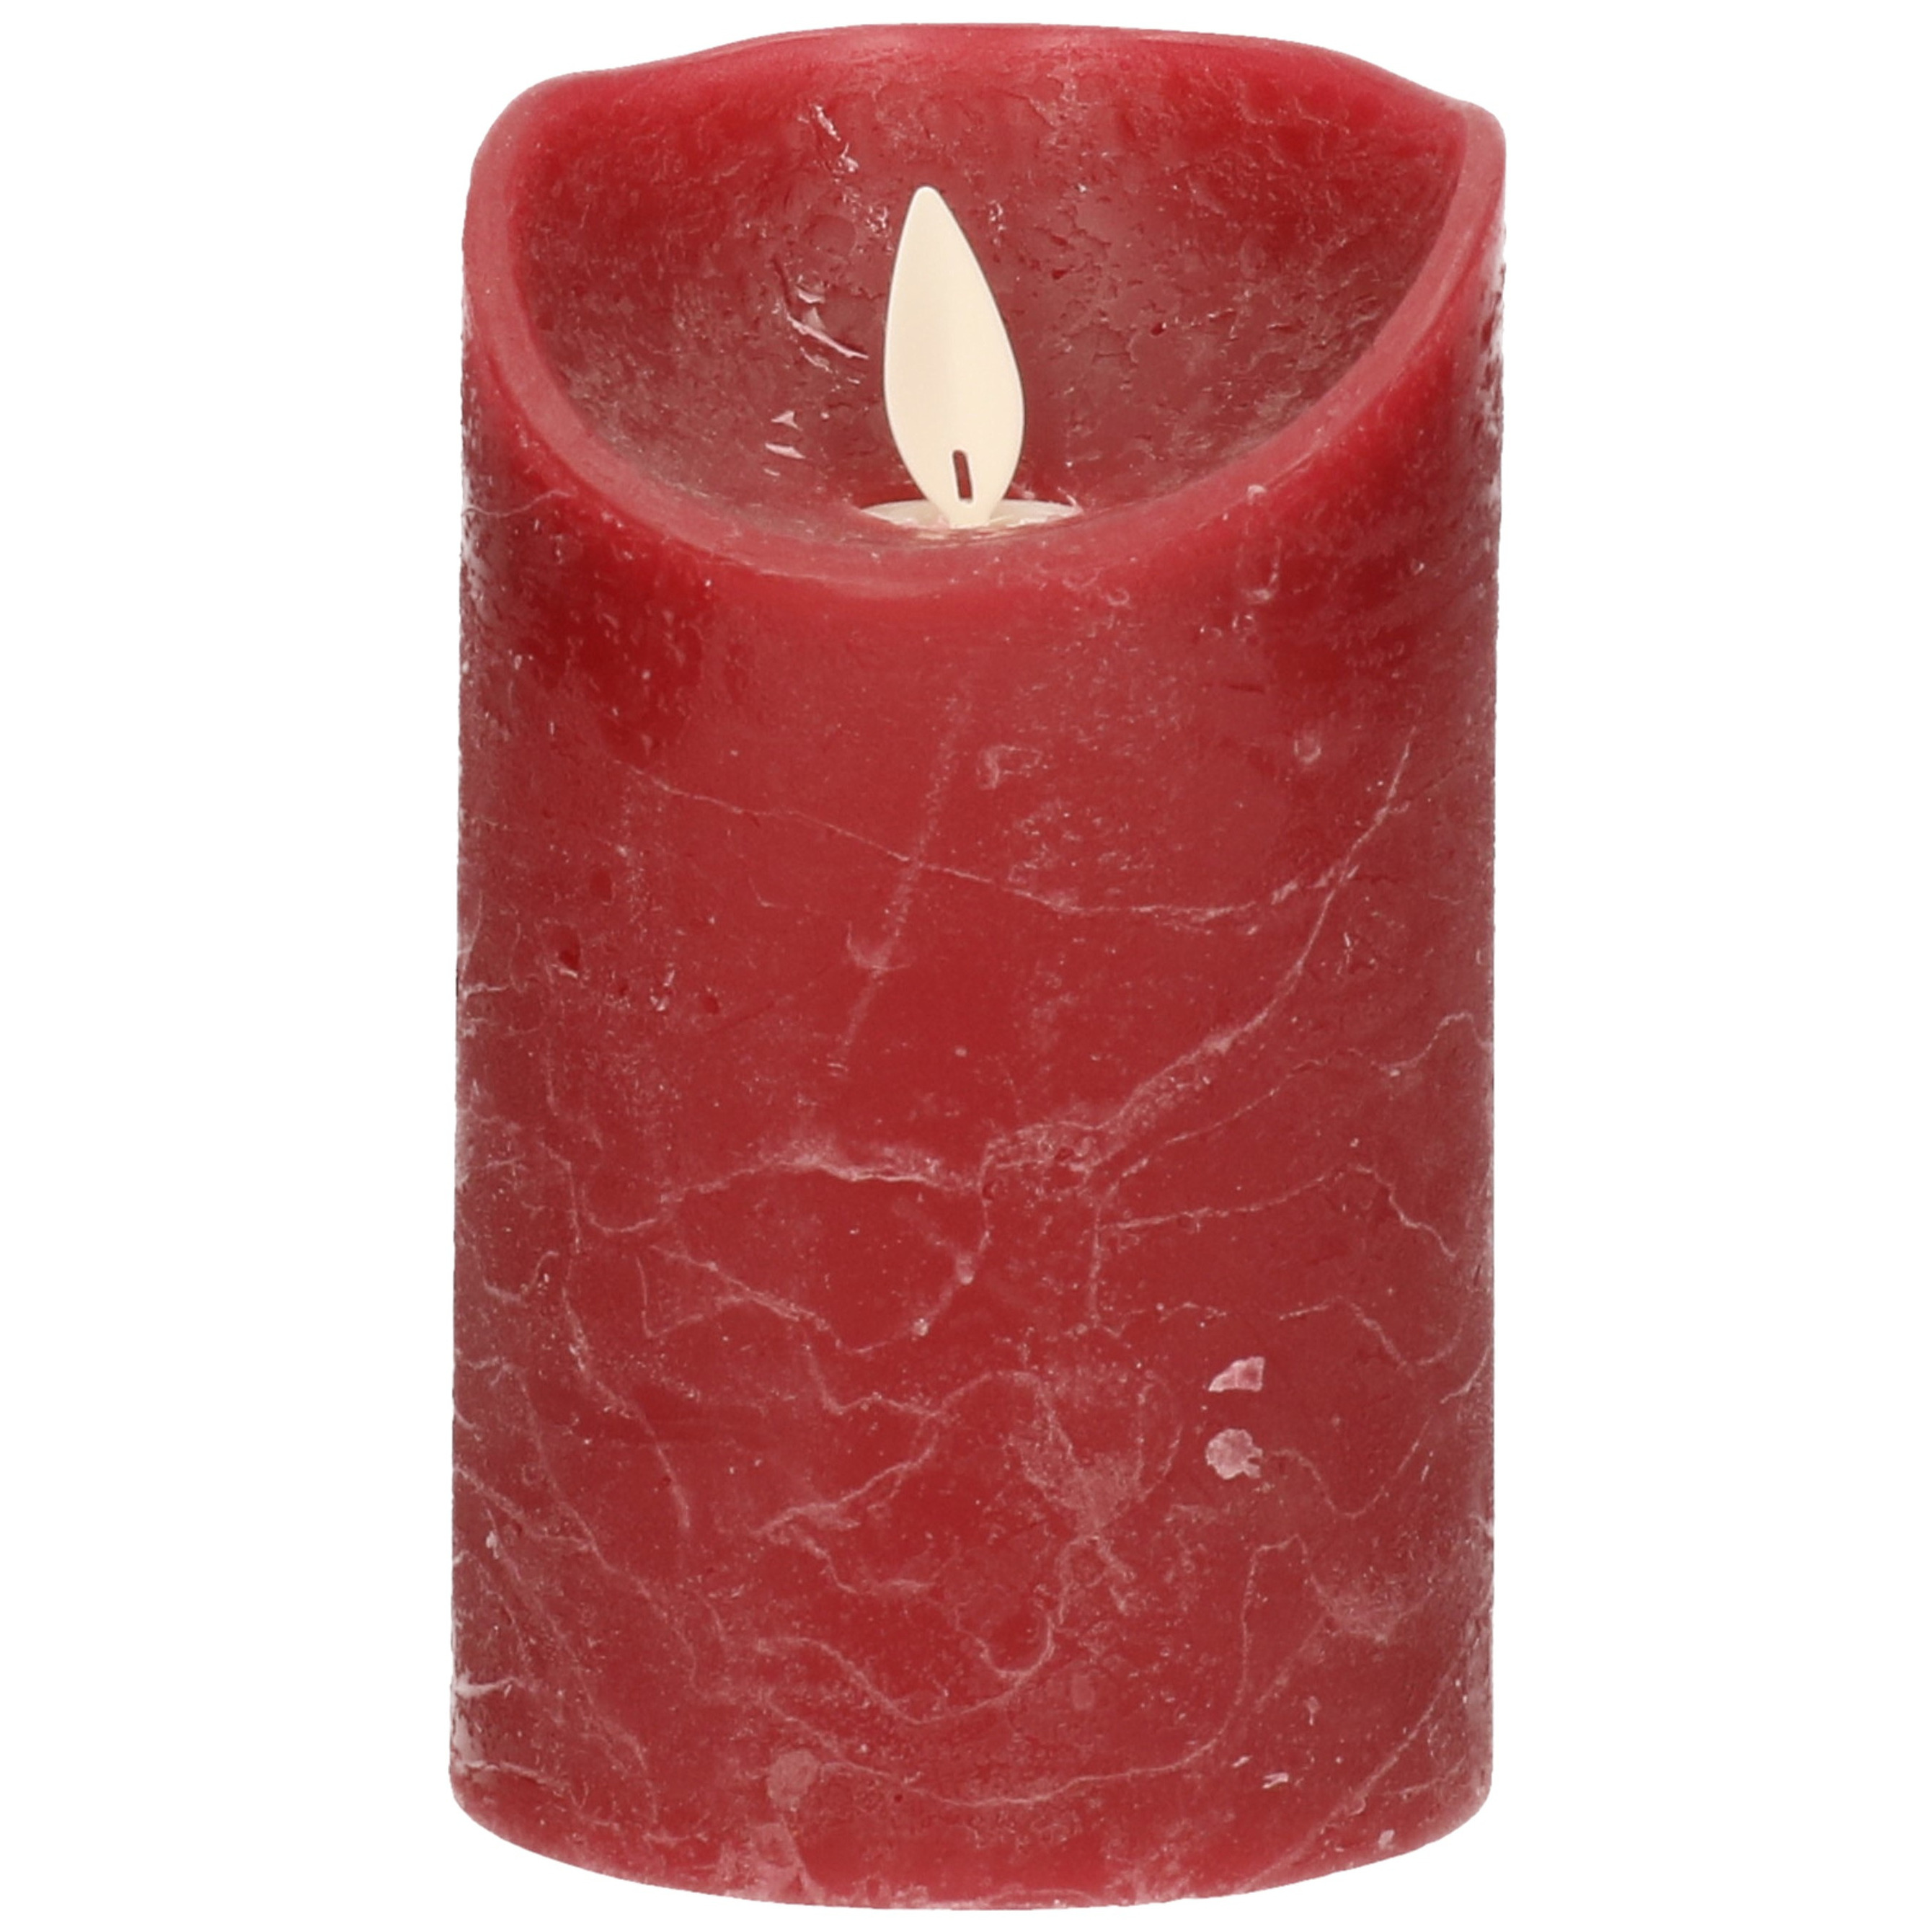 1x Bordeaux rode LED kaarsen / stompkaarsen met bewegende vlam 12,5